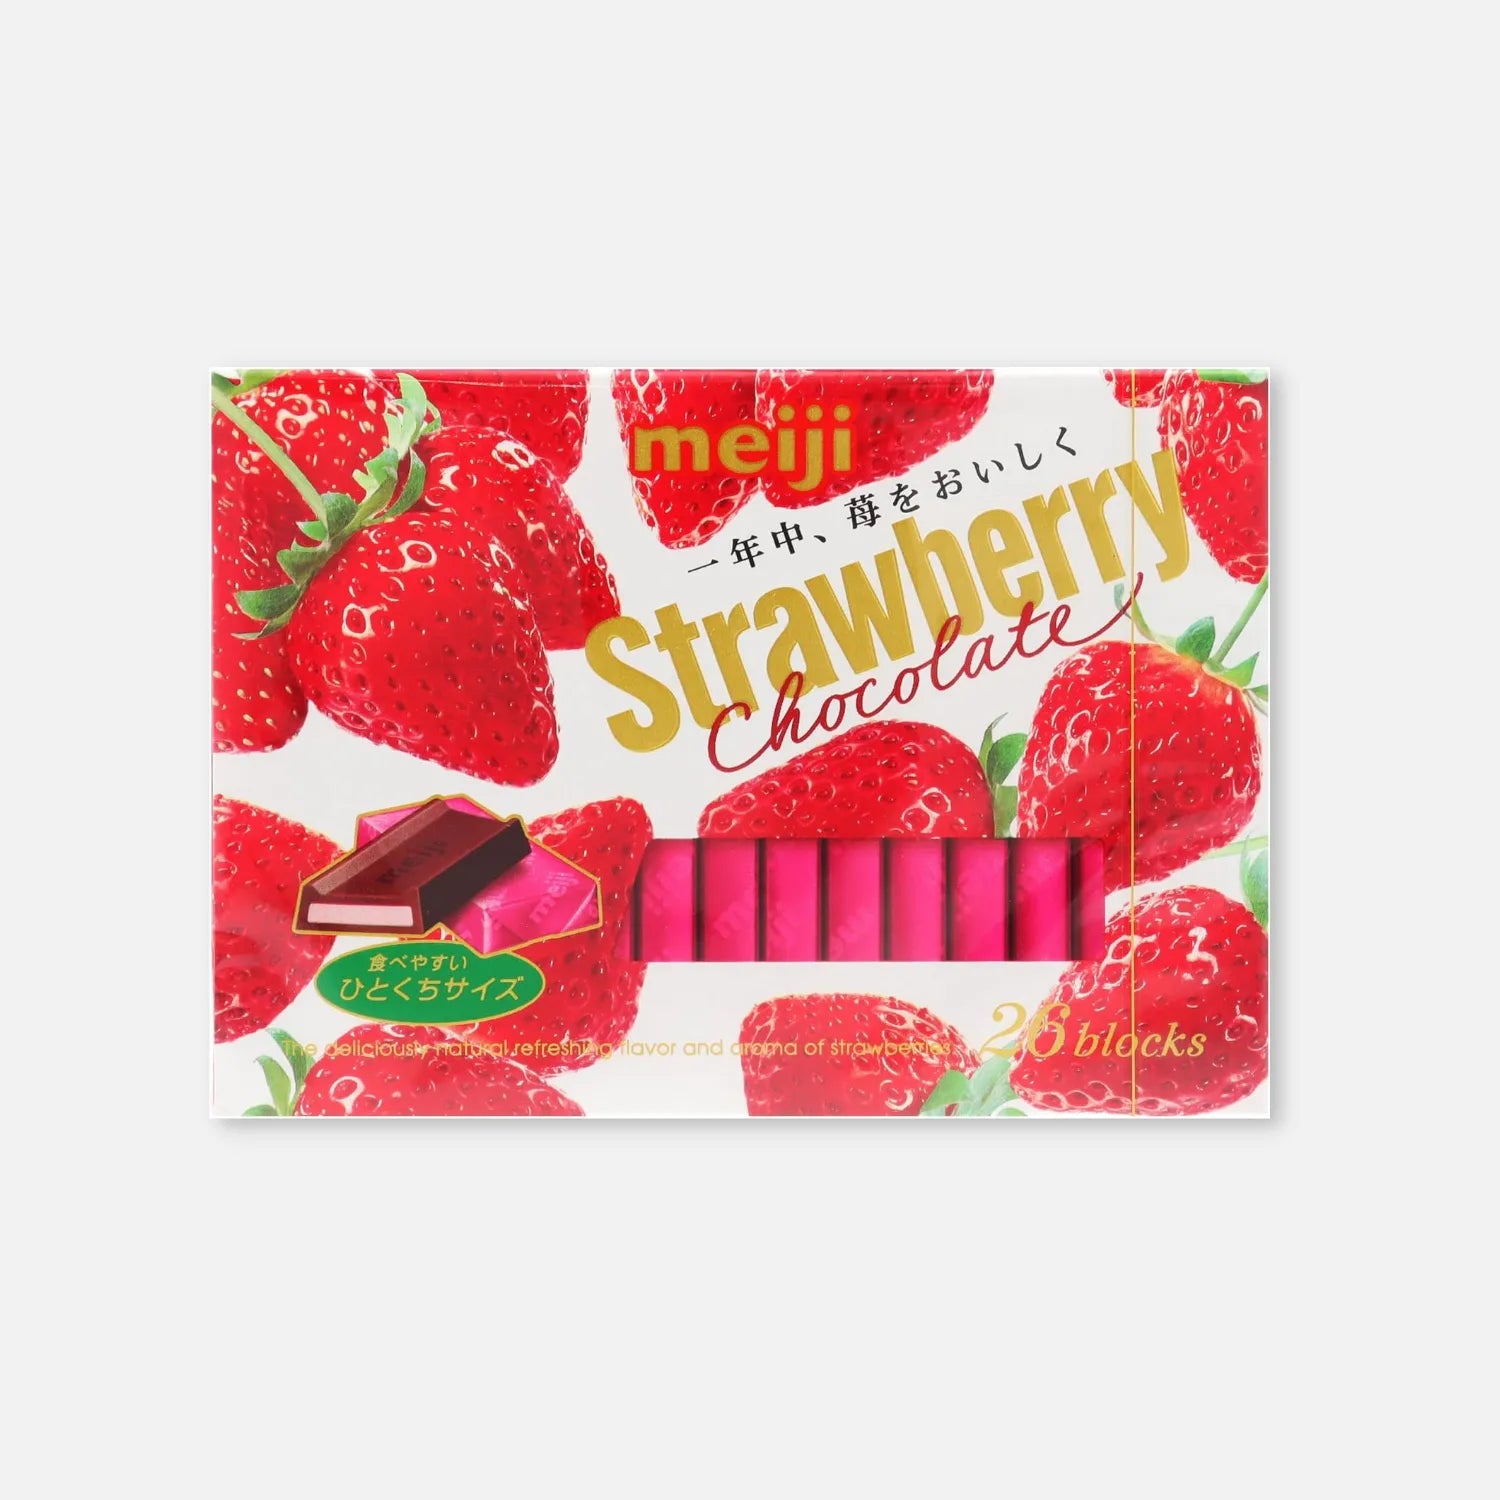 Meiji Strawberry Chocolate Box (26 Pieces) - Buy Me Japan